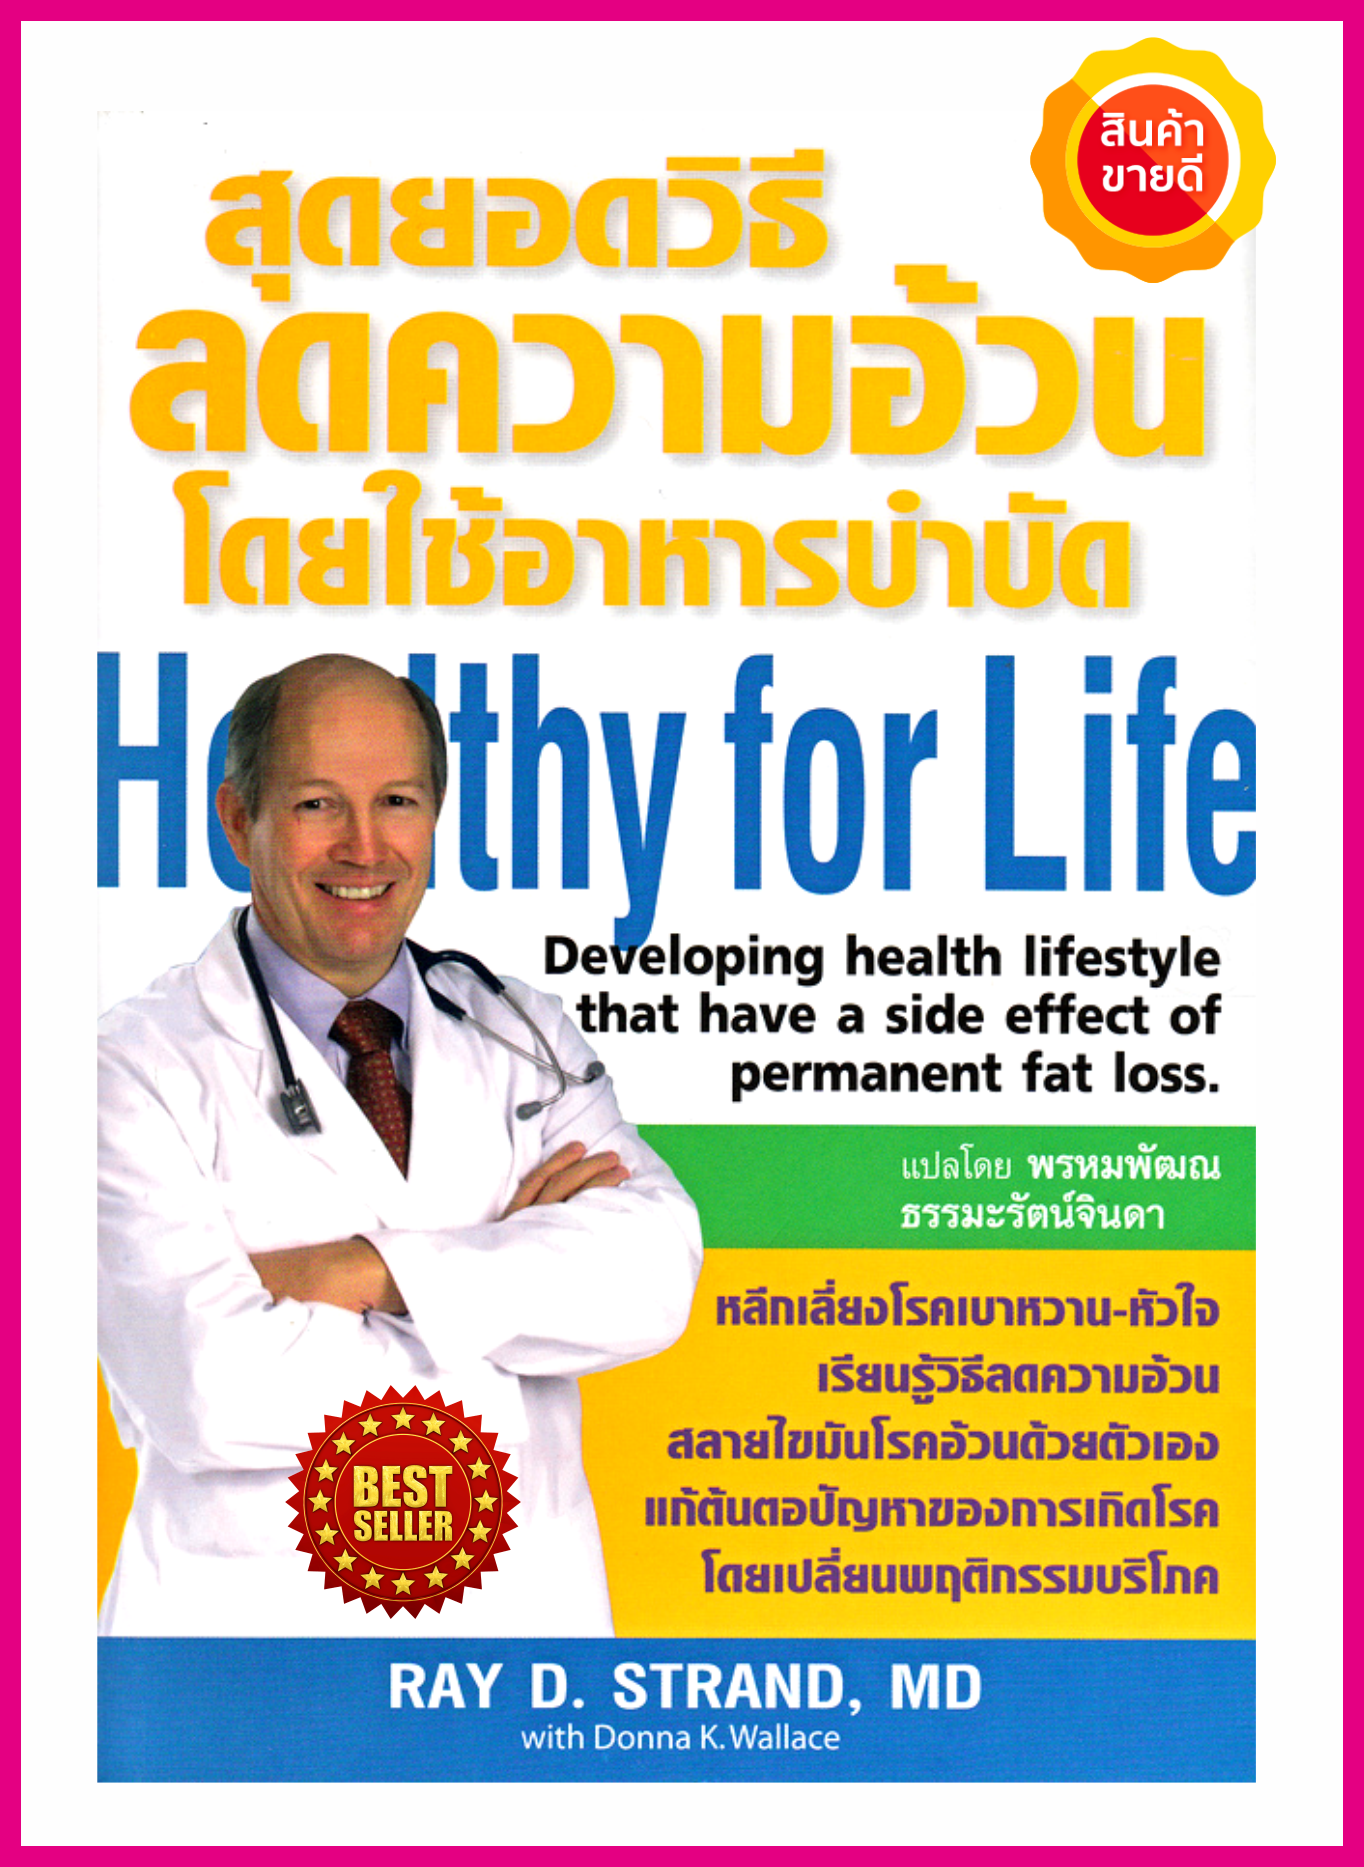 หนังสือ สุดยอดวิธีลดความอ้วน โดยใช้อาหารบำบัด คู่มือให้ความรู้เรื่องความอ้วน ความรู้เรื่องสารอาหารกับสุขภาพ และโปรแกรมอาหารบำบัด